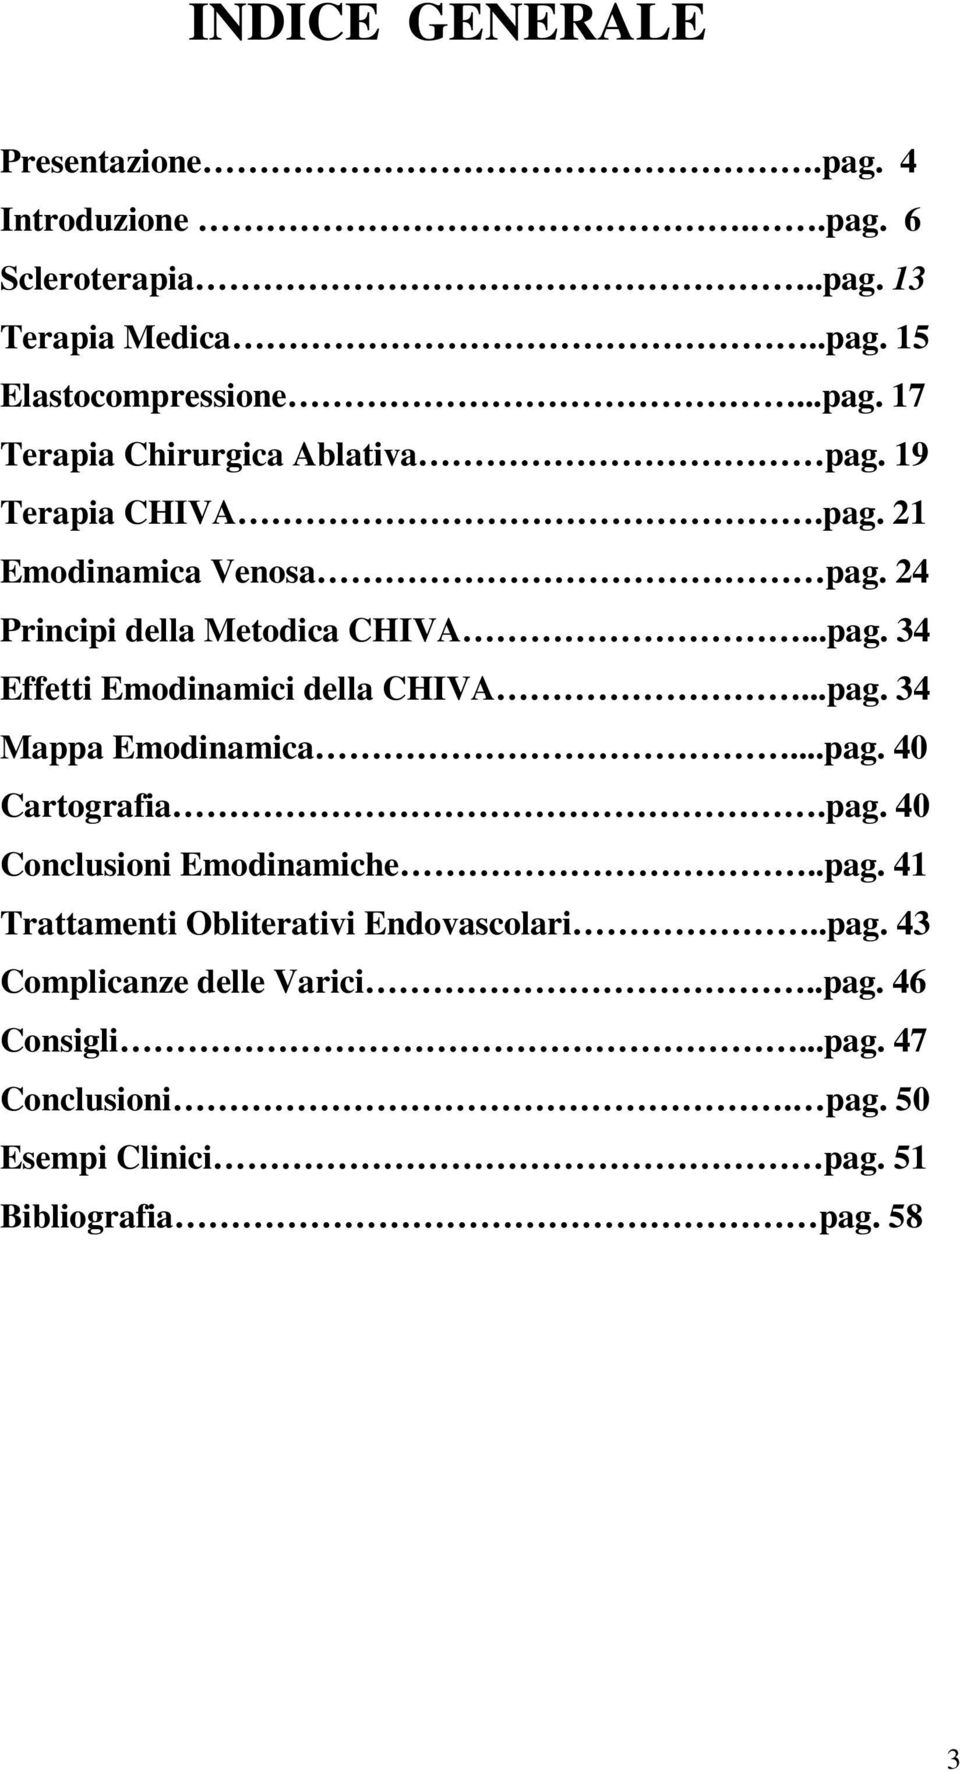 ..pag. 40 Cartografia.pag. 40 Conclusioni Emodinamiche..pag. 41 Trattamenti Obliterativi Endovascolari..pag. 43 Complicanze delle Varici.